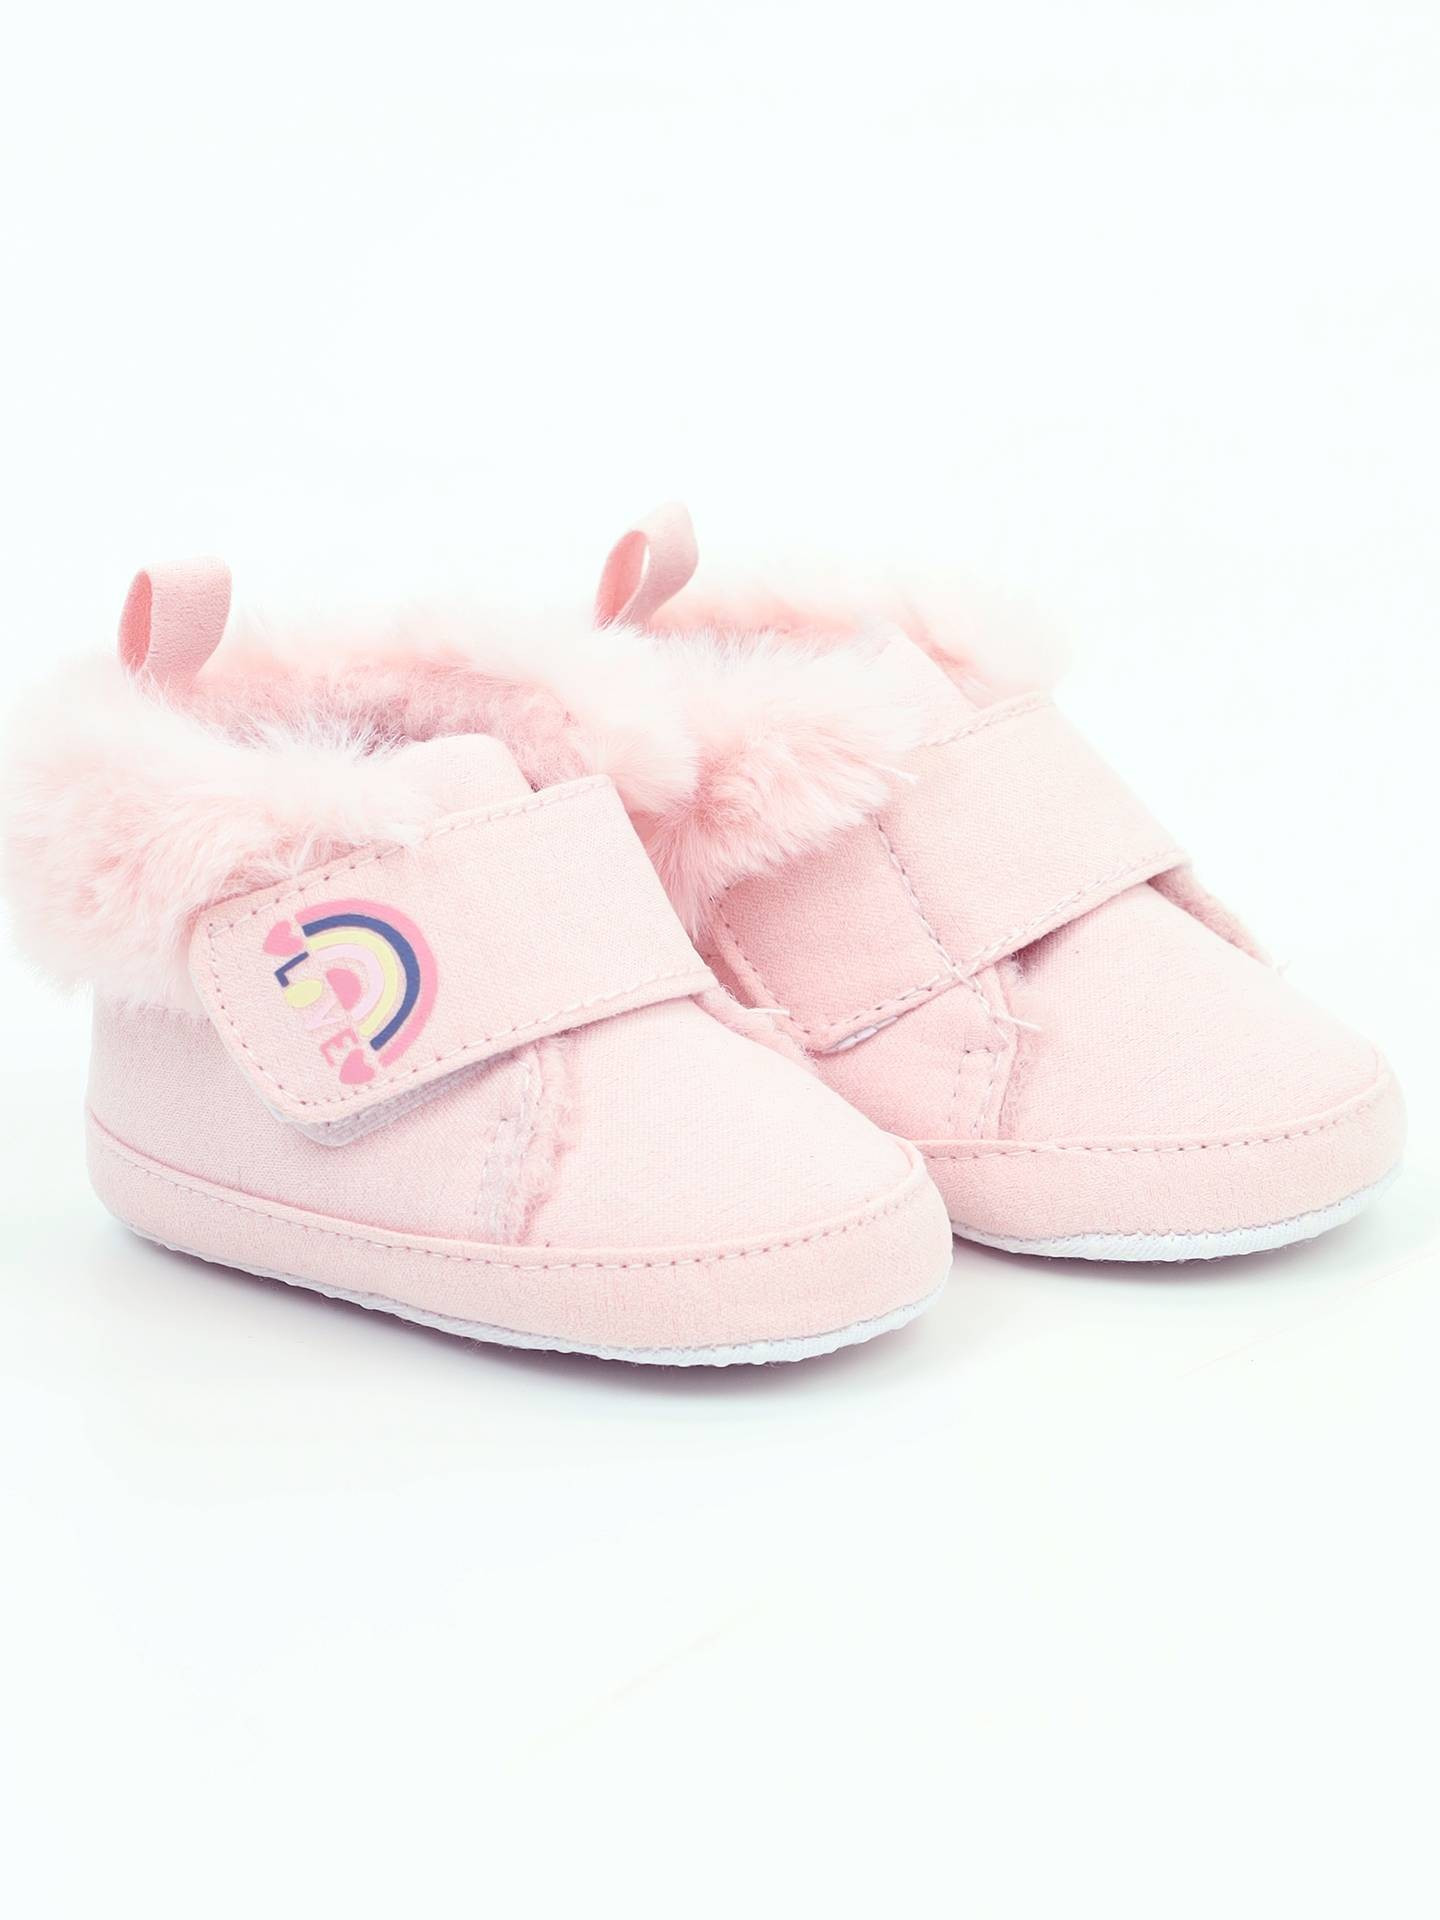 Yoclub Dětská dívčí obuv OBO-0019G-0500 Light Pink 0-6 měsíců